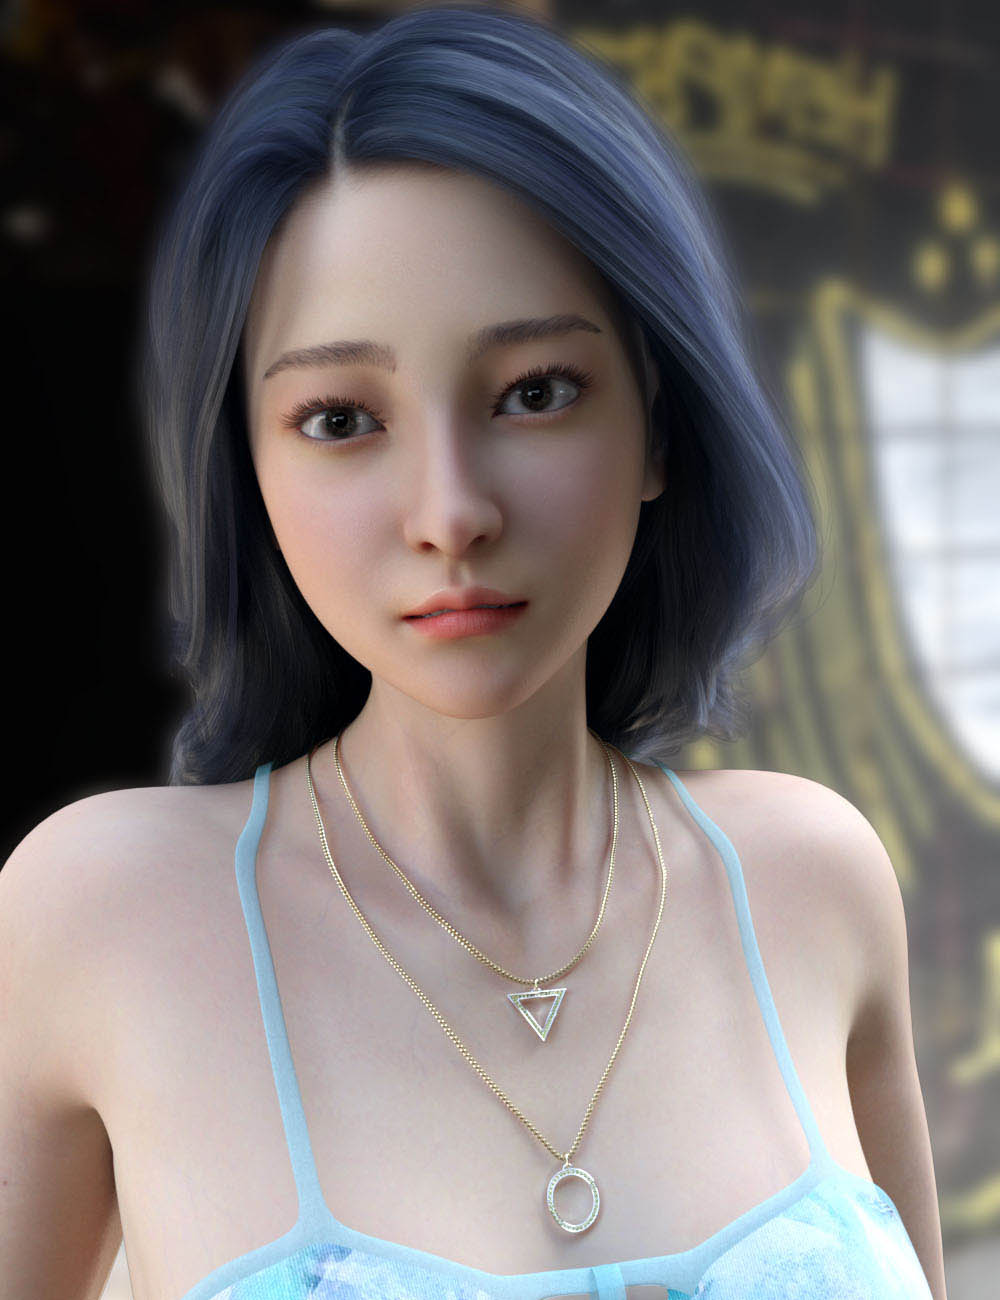 Daz高清角色3D模型 亚裔女性表情妆容模型下载